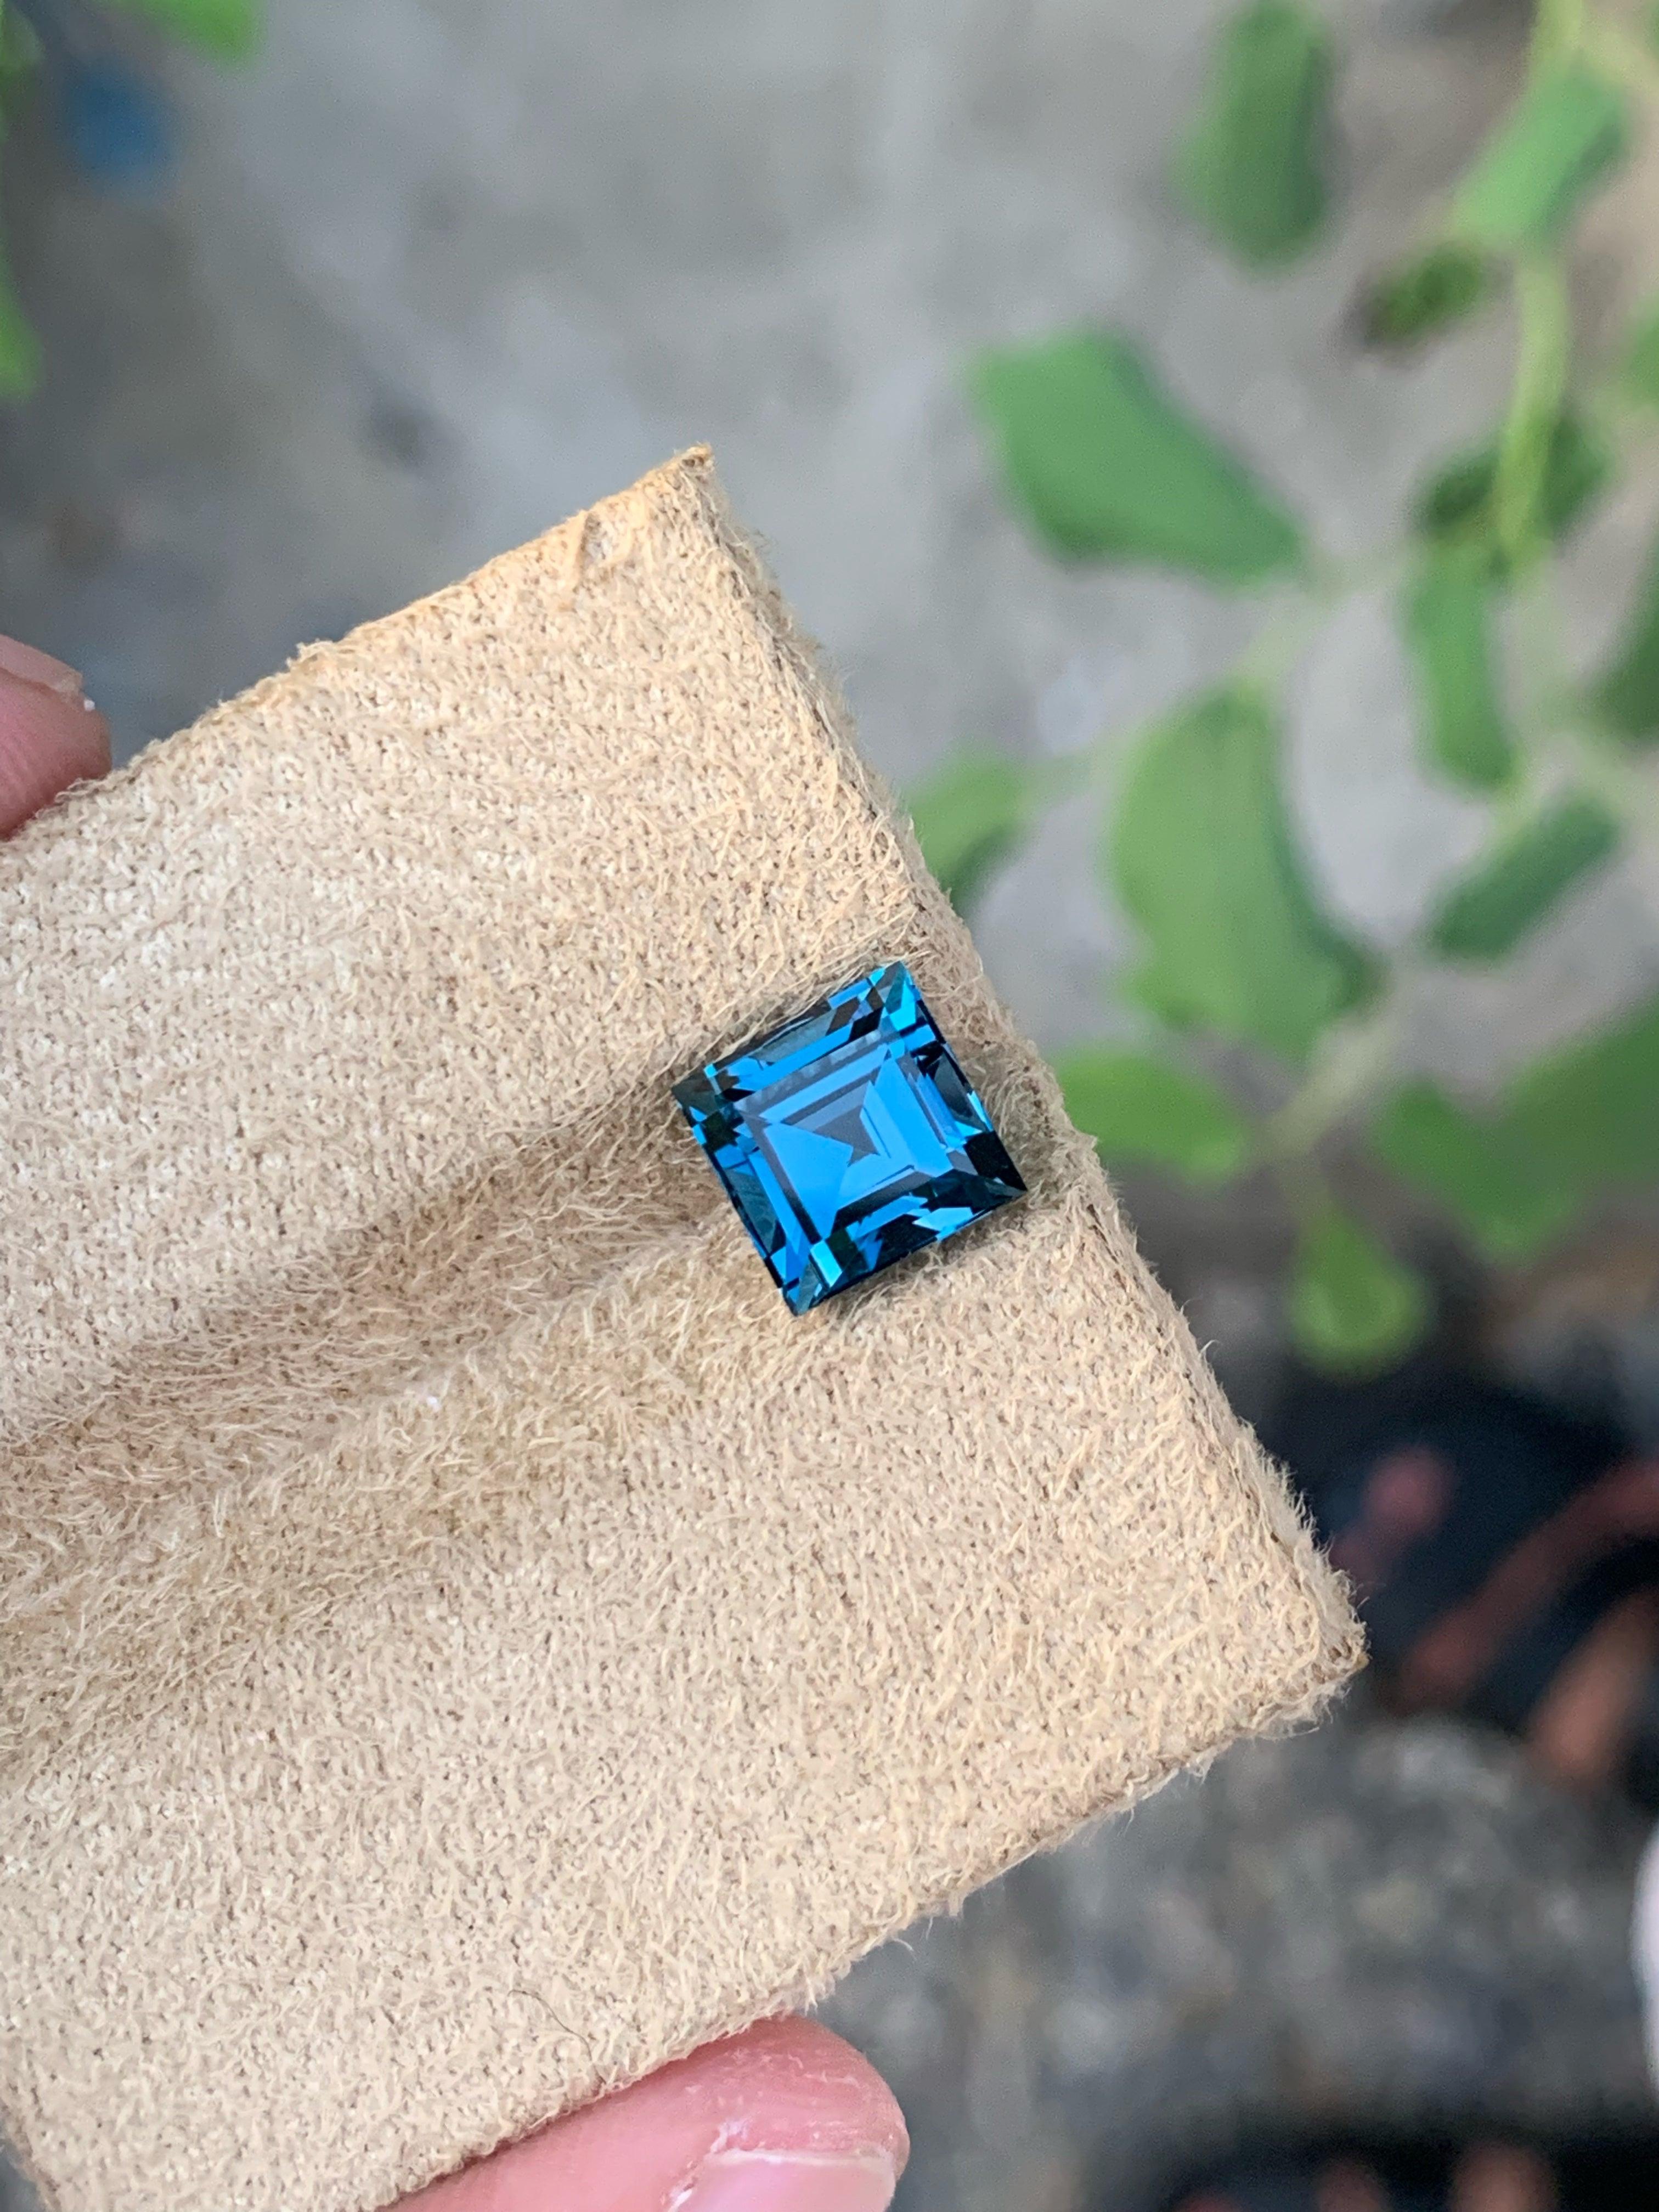 Herausragende Bright London Blue Topaz Edelstein von 3,60 Karat aus Madagaskar hat einen wunderbaren Schliff in einem Quadrat Form, unglaubliche blaue Farbe. Große Brillanz. Dieses Schmuckstück ist Loupe Clean  Klarheit. 

Informationen zum